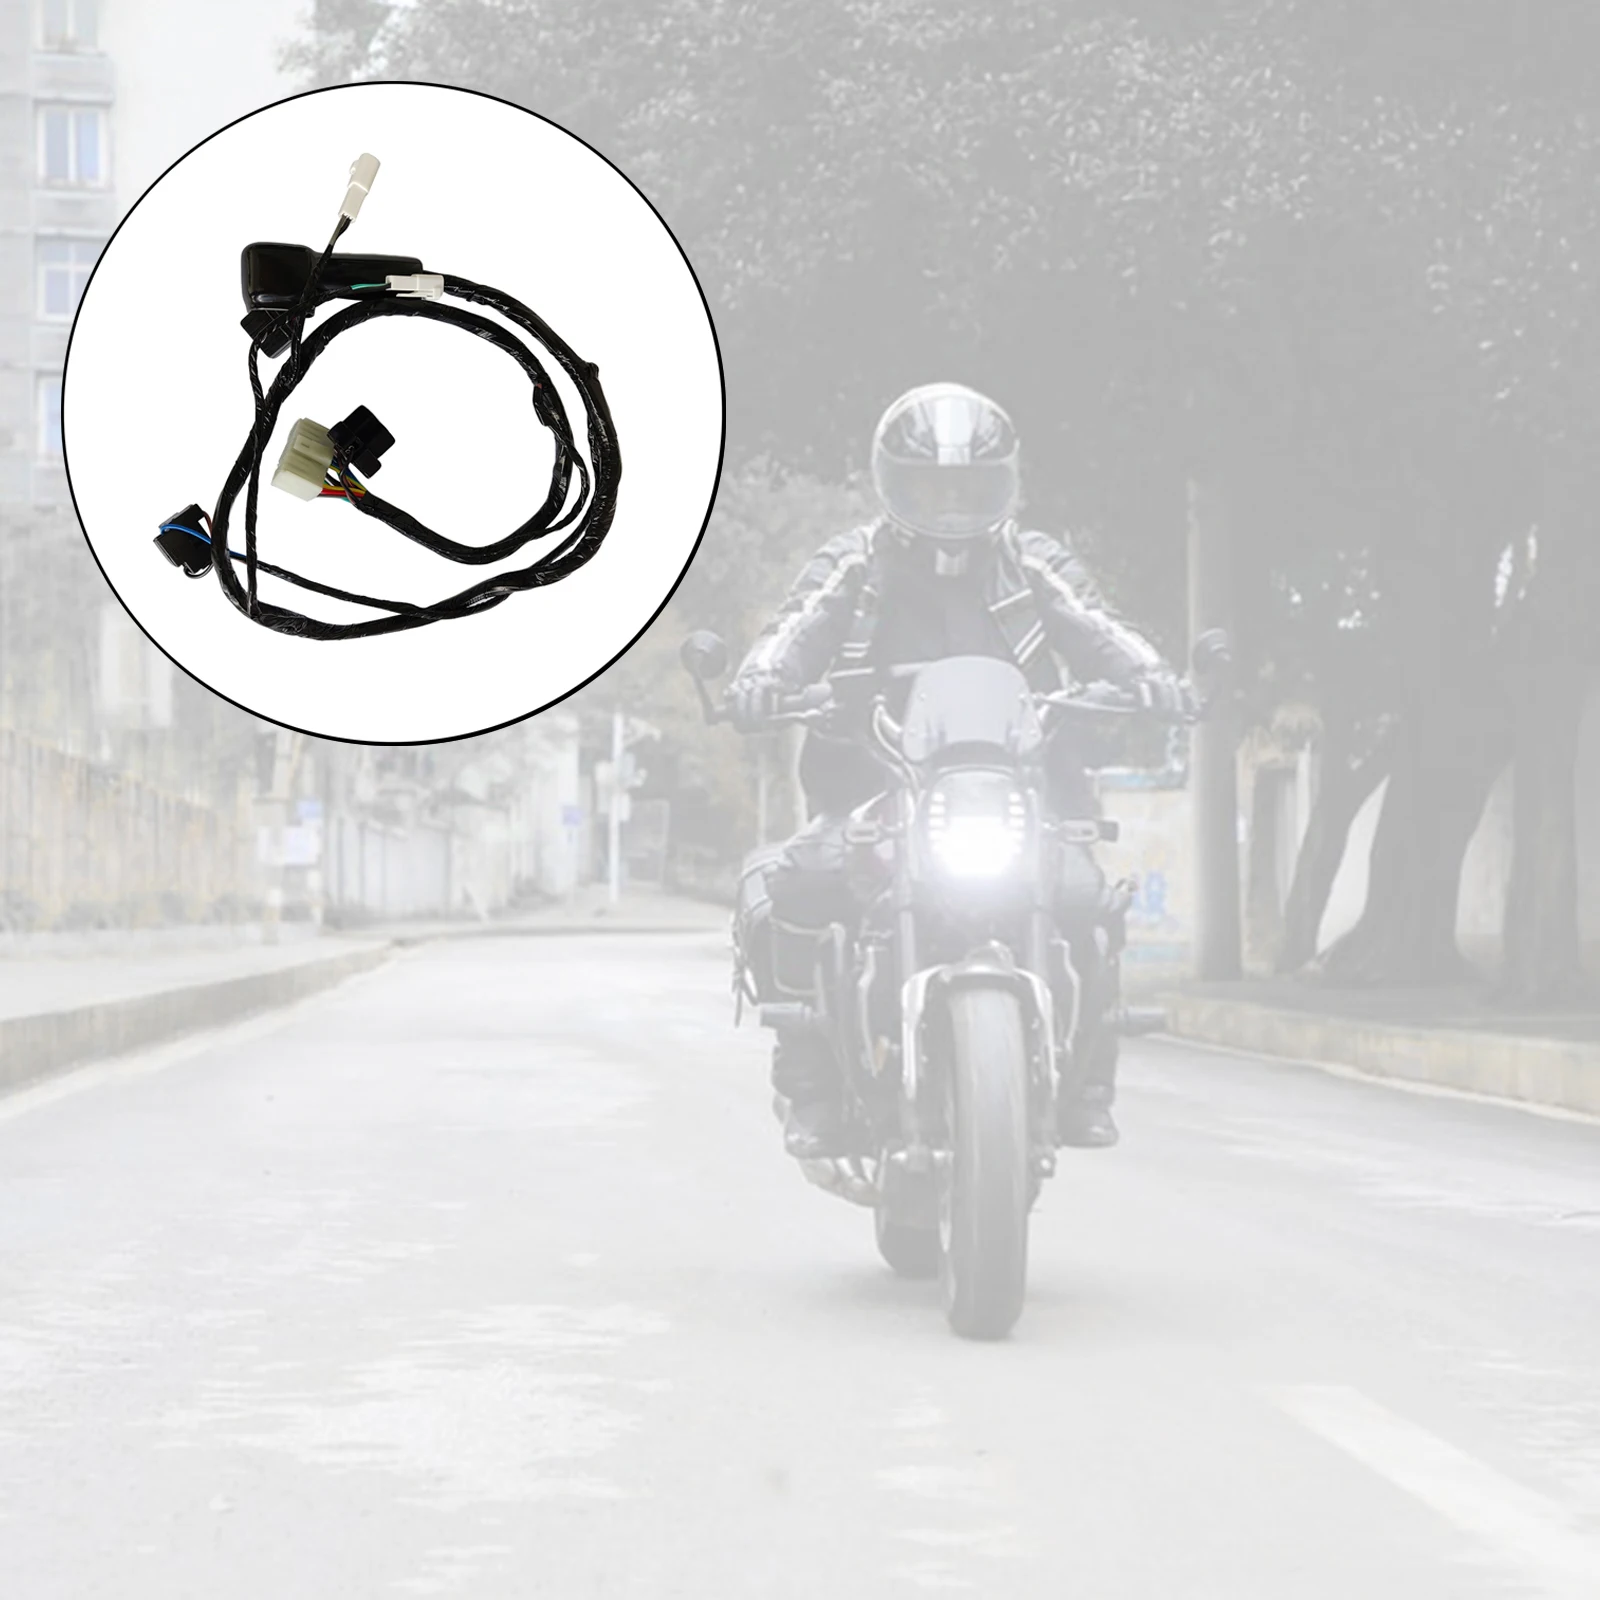 Motorcycle 36620-29G30 Headlight Wire Harness Fit for Suzuki GSXR600 GSXR750